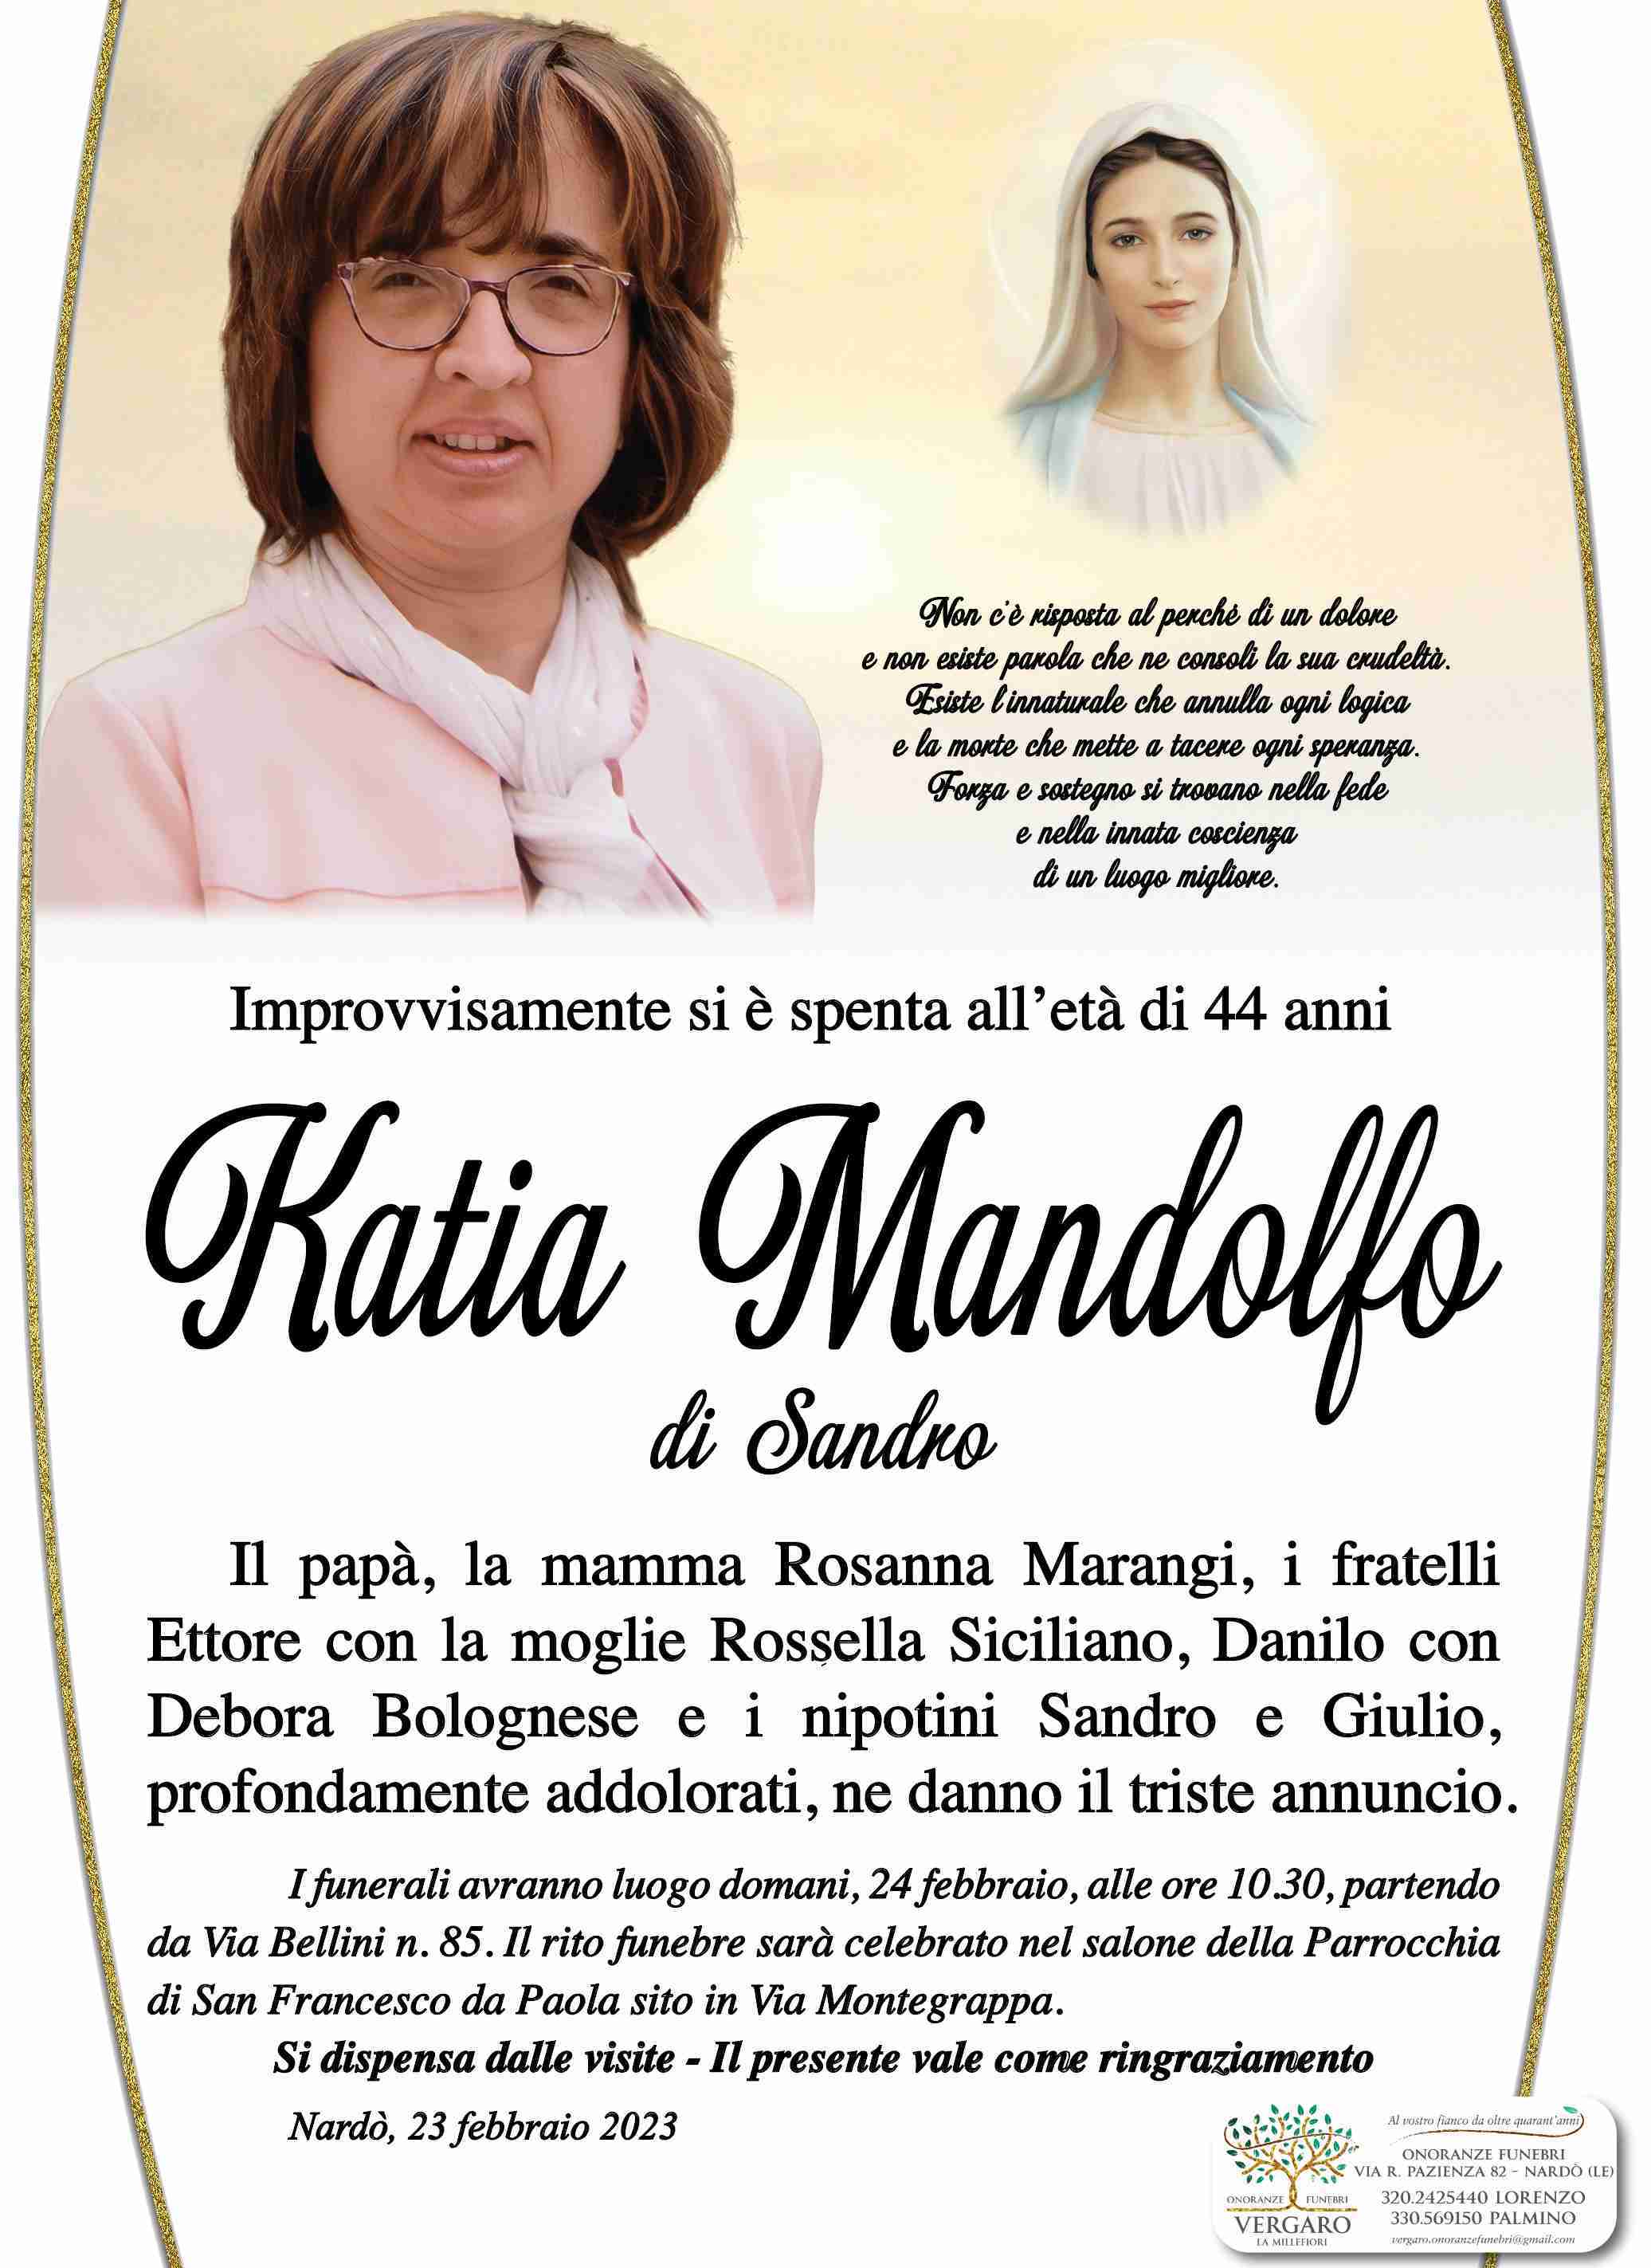 Katiuscia Mandolfo